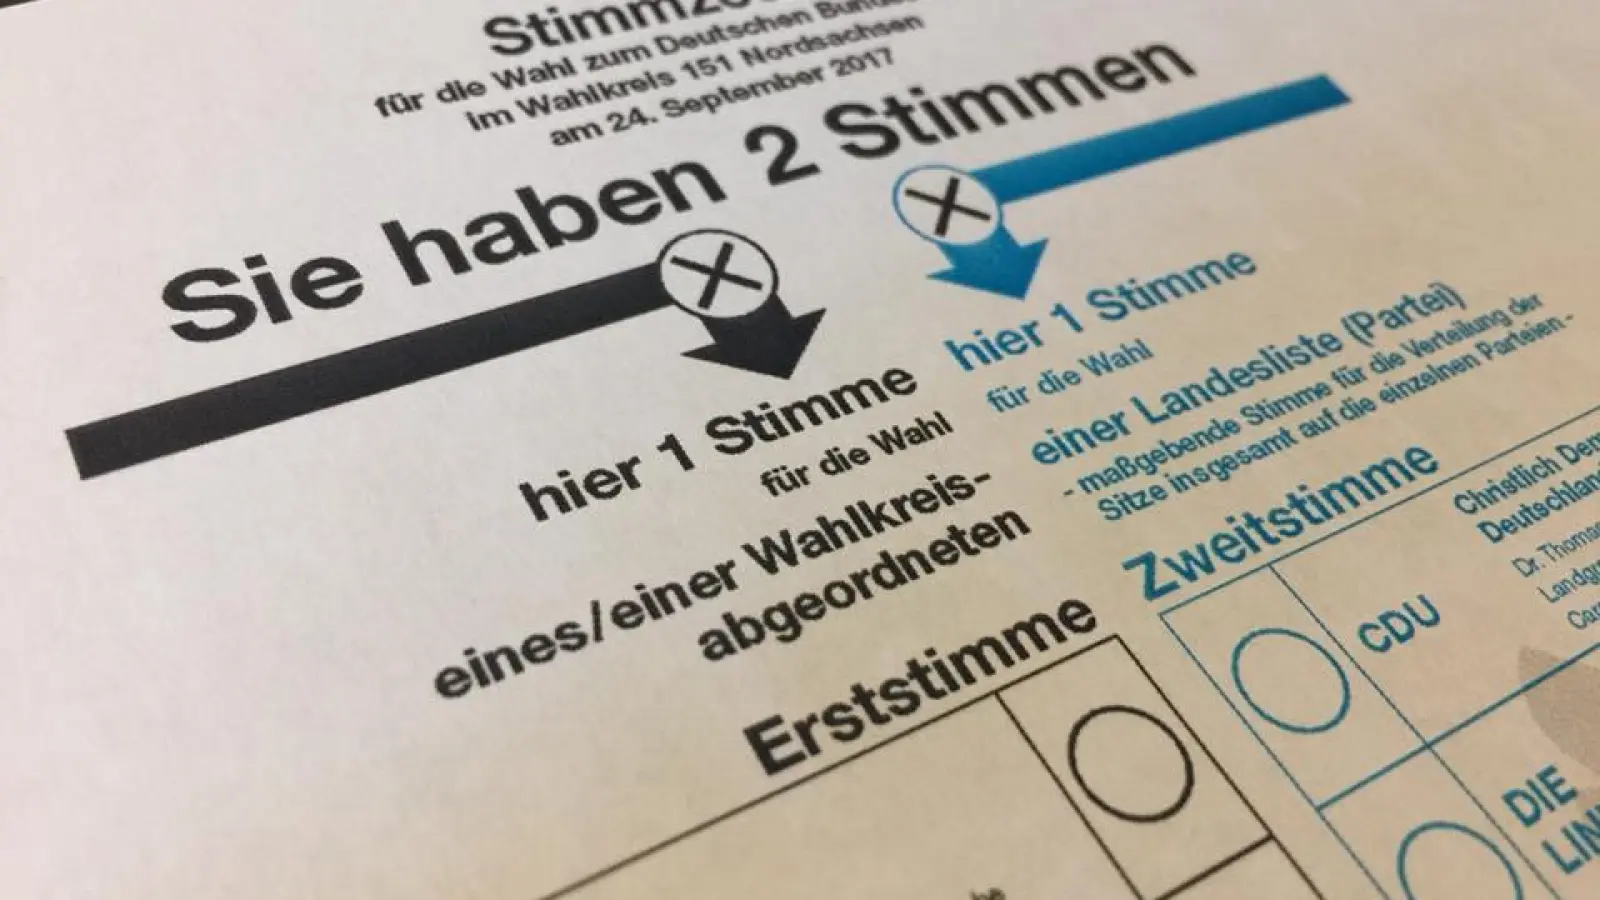 Bundestagswahl in Taucha: Wahlbeteiligung steigt, Alternative für Deutschland zweitstärkste Kraft (Foto: taucha-kompakt.de)